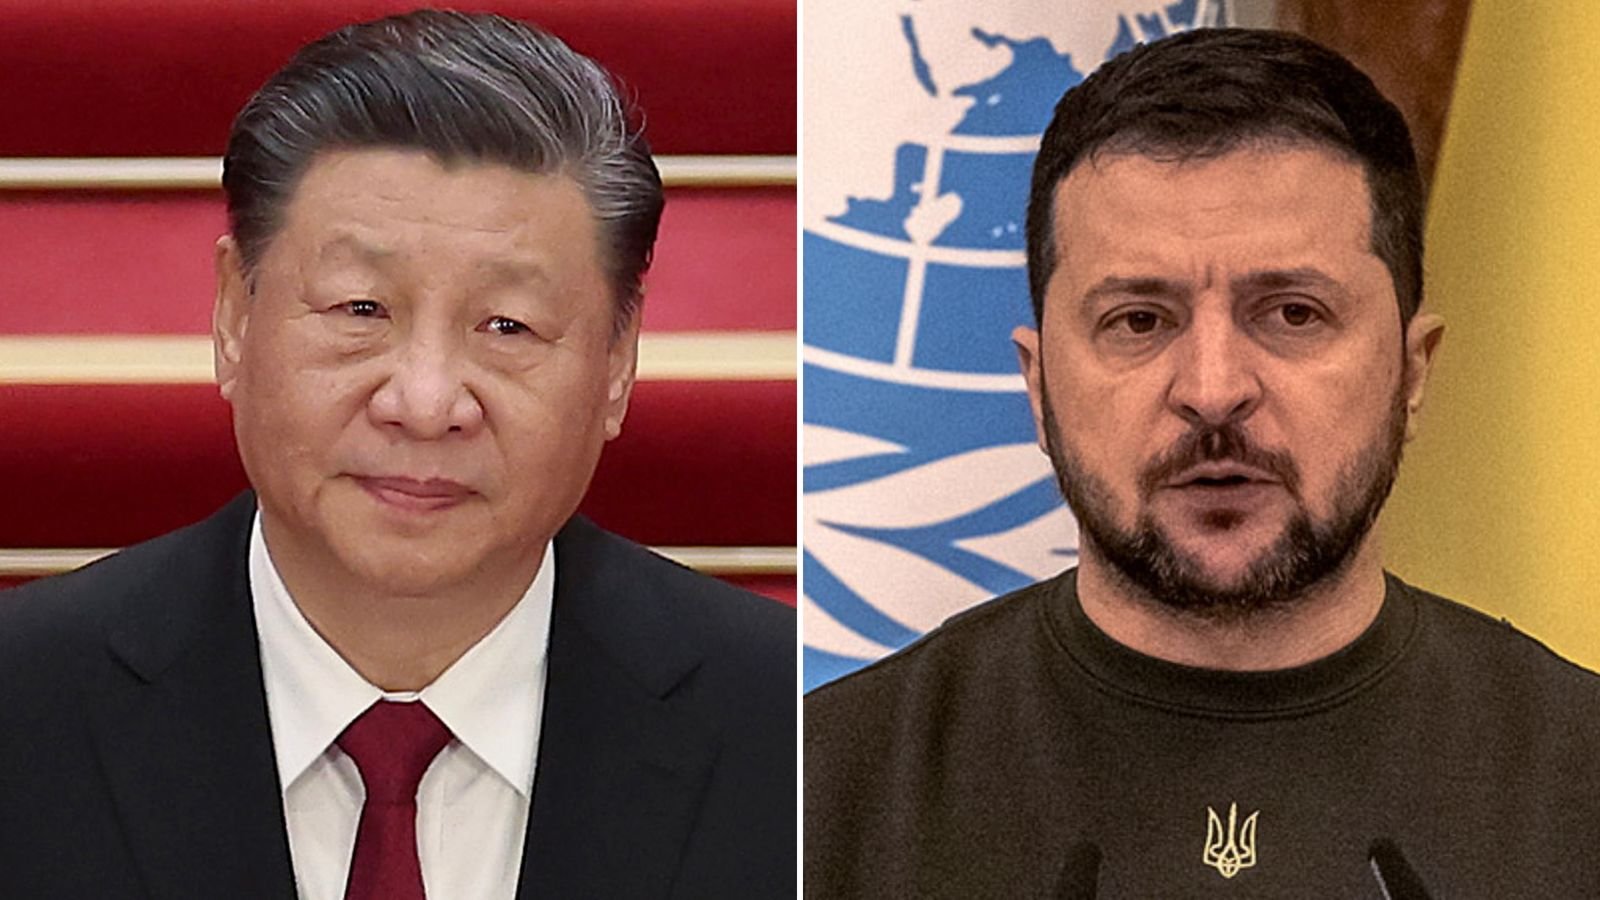  Evoluţie diplomatică suprinzătoare: Xi Jinping a vorbit cu Volodimir Zelenski